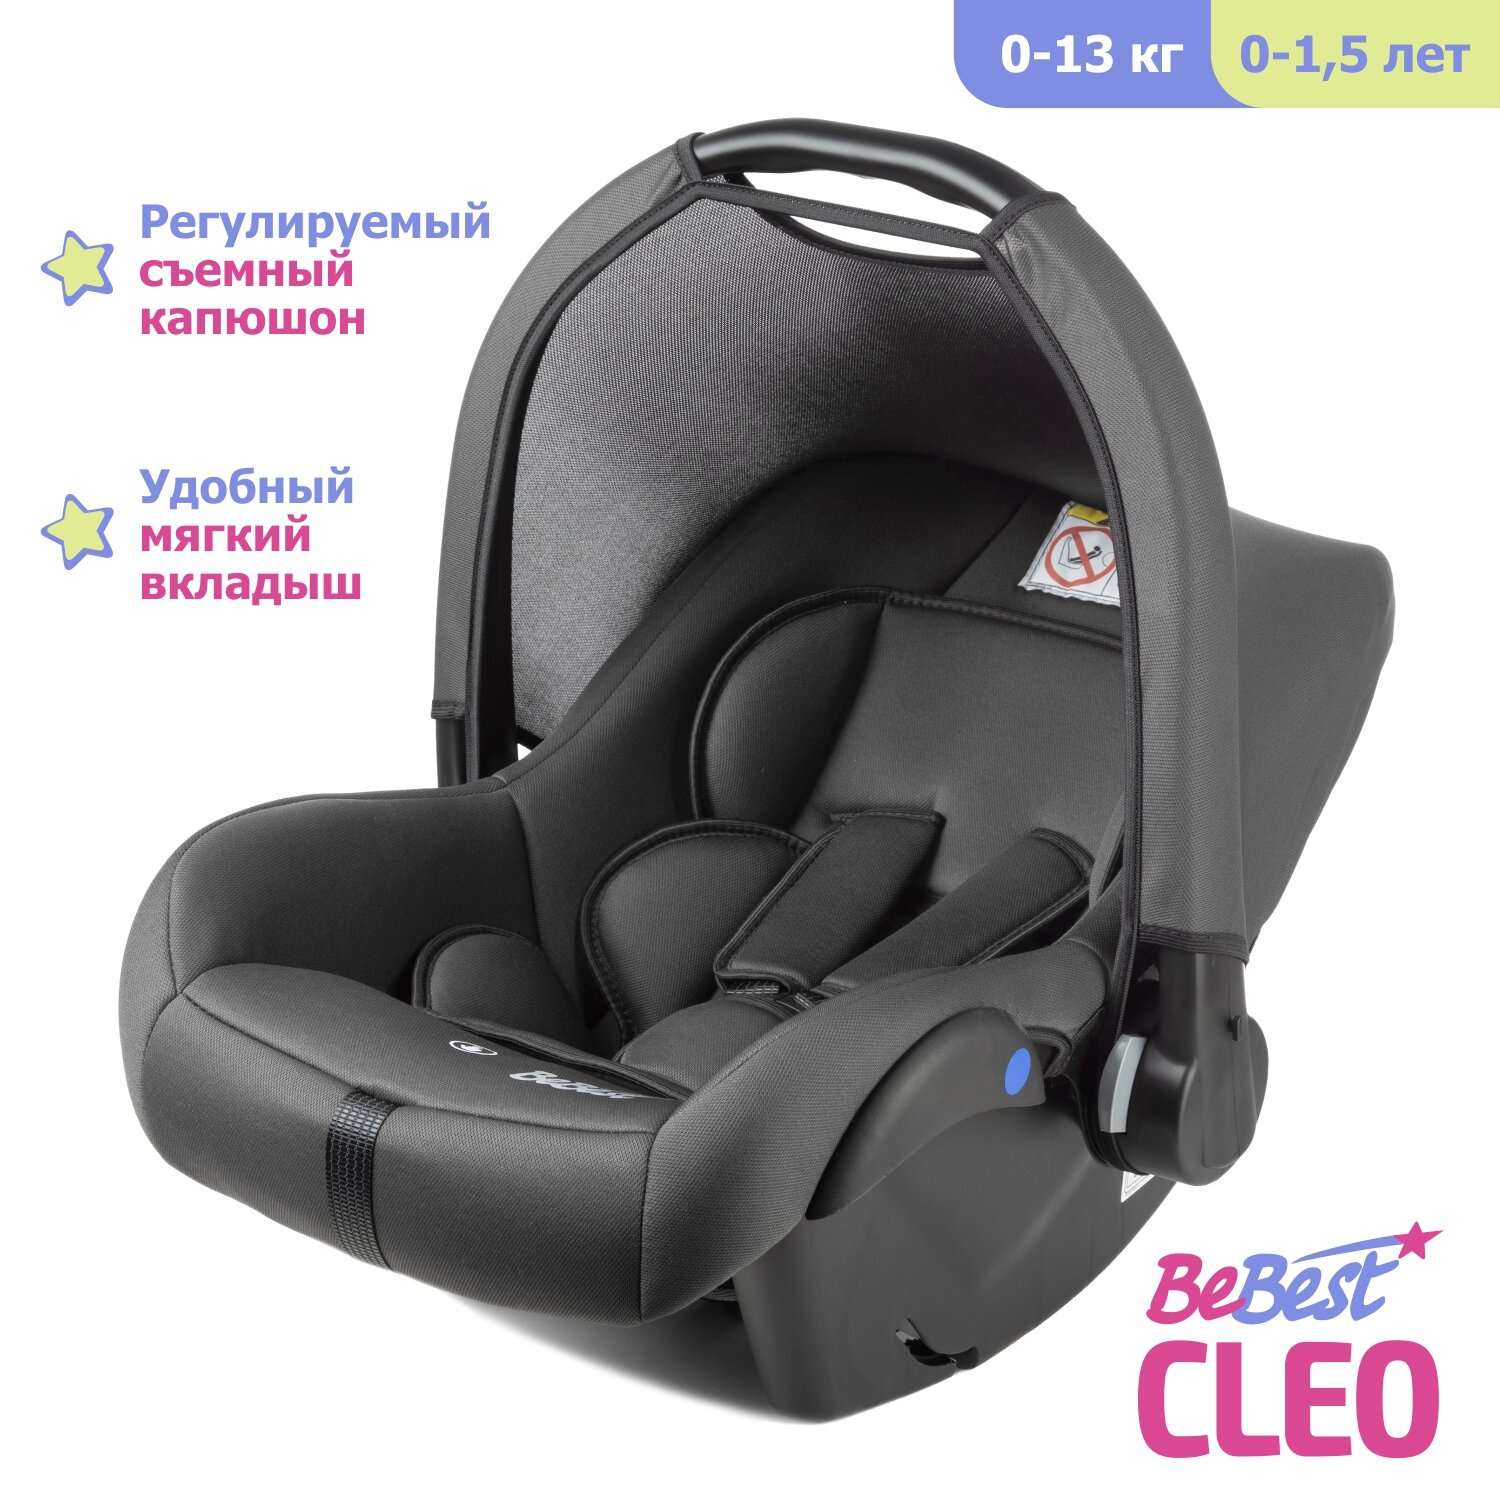 Автолюлька для новорожденных BeBest Cleo от 0 до 13 кг цвет grey - фото 1